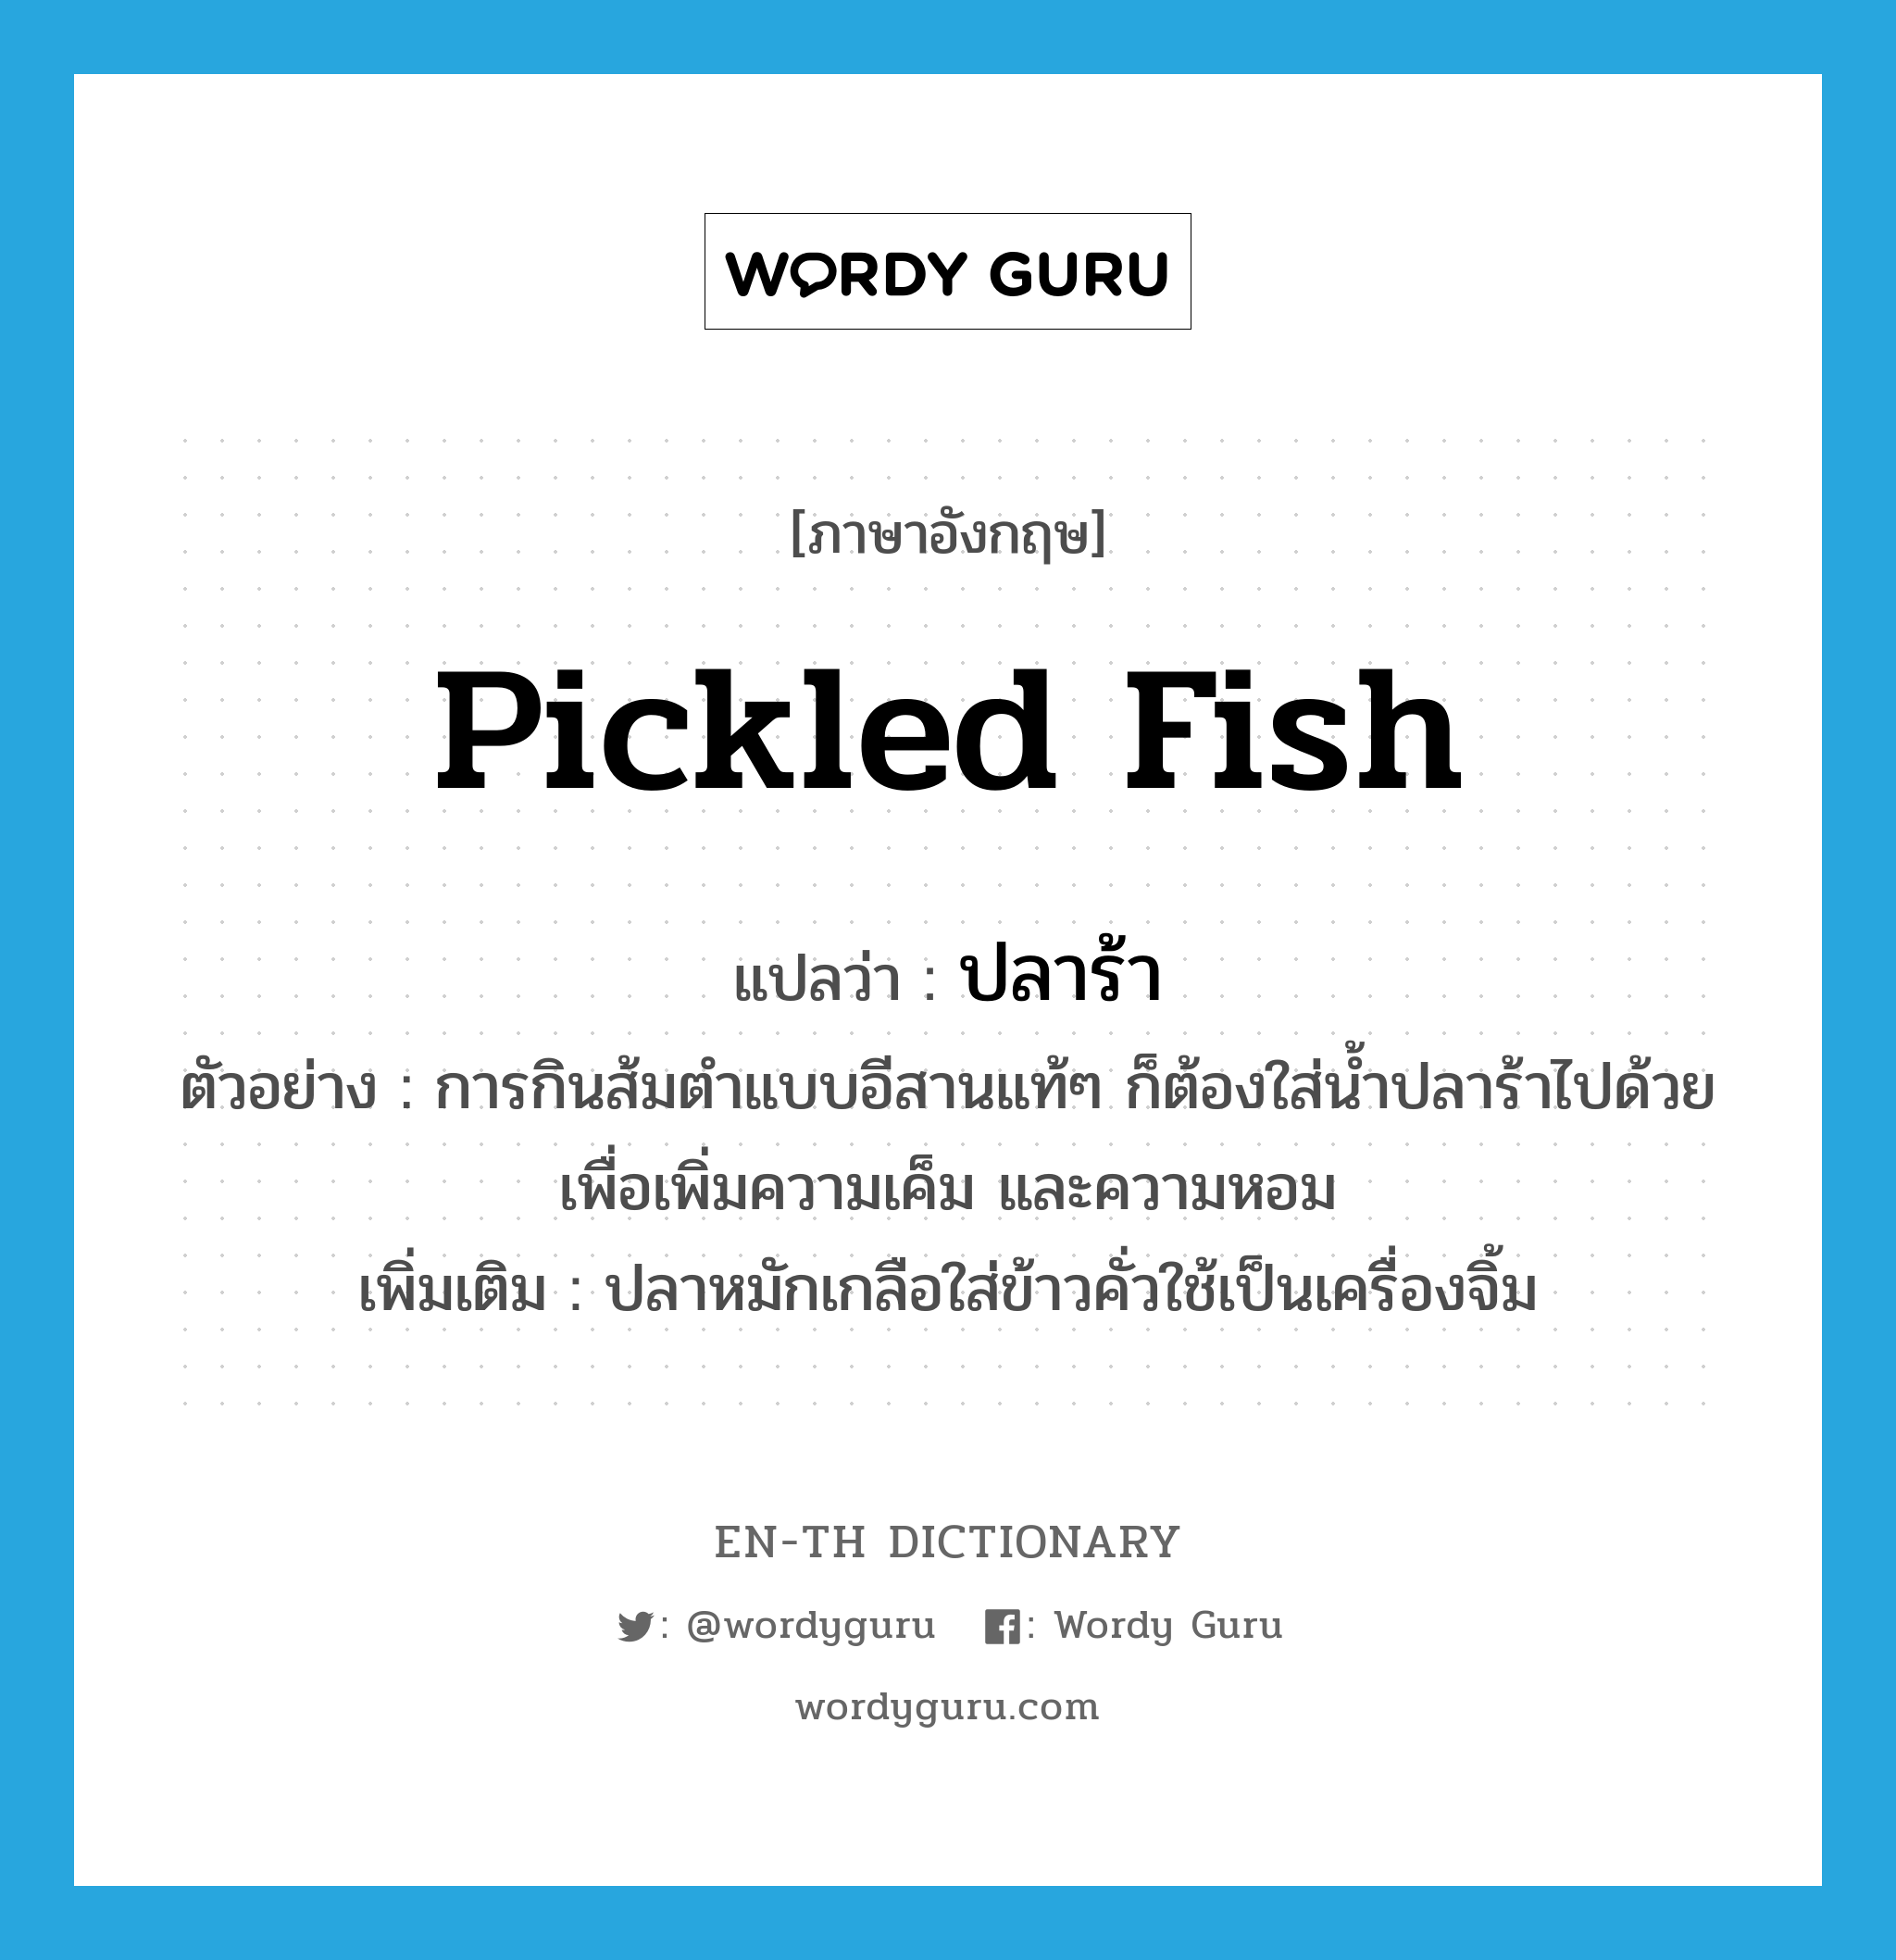 ปลาร้า ภาษาอังกฤษ?, คำศัพท์ภาษาอังกฤษ ปลาร้า แปลว่า pickled fish ประเภท N ตัวอย่าง การกินส้มตำแบบอีสานแท้ๆ ก็ต้องใส่น้ำปลาร้าไปด้วยเพื่อเพิ่มความเค็ม และความหอม เพิ่มเติม ปลาหมักเกลือใส่ข้าวคั่วใช้เป็นเครื่องจิ้ม หมวด N